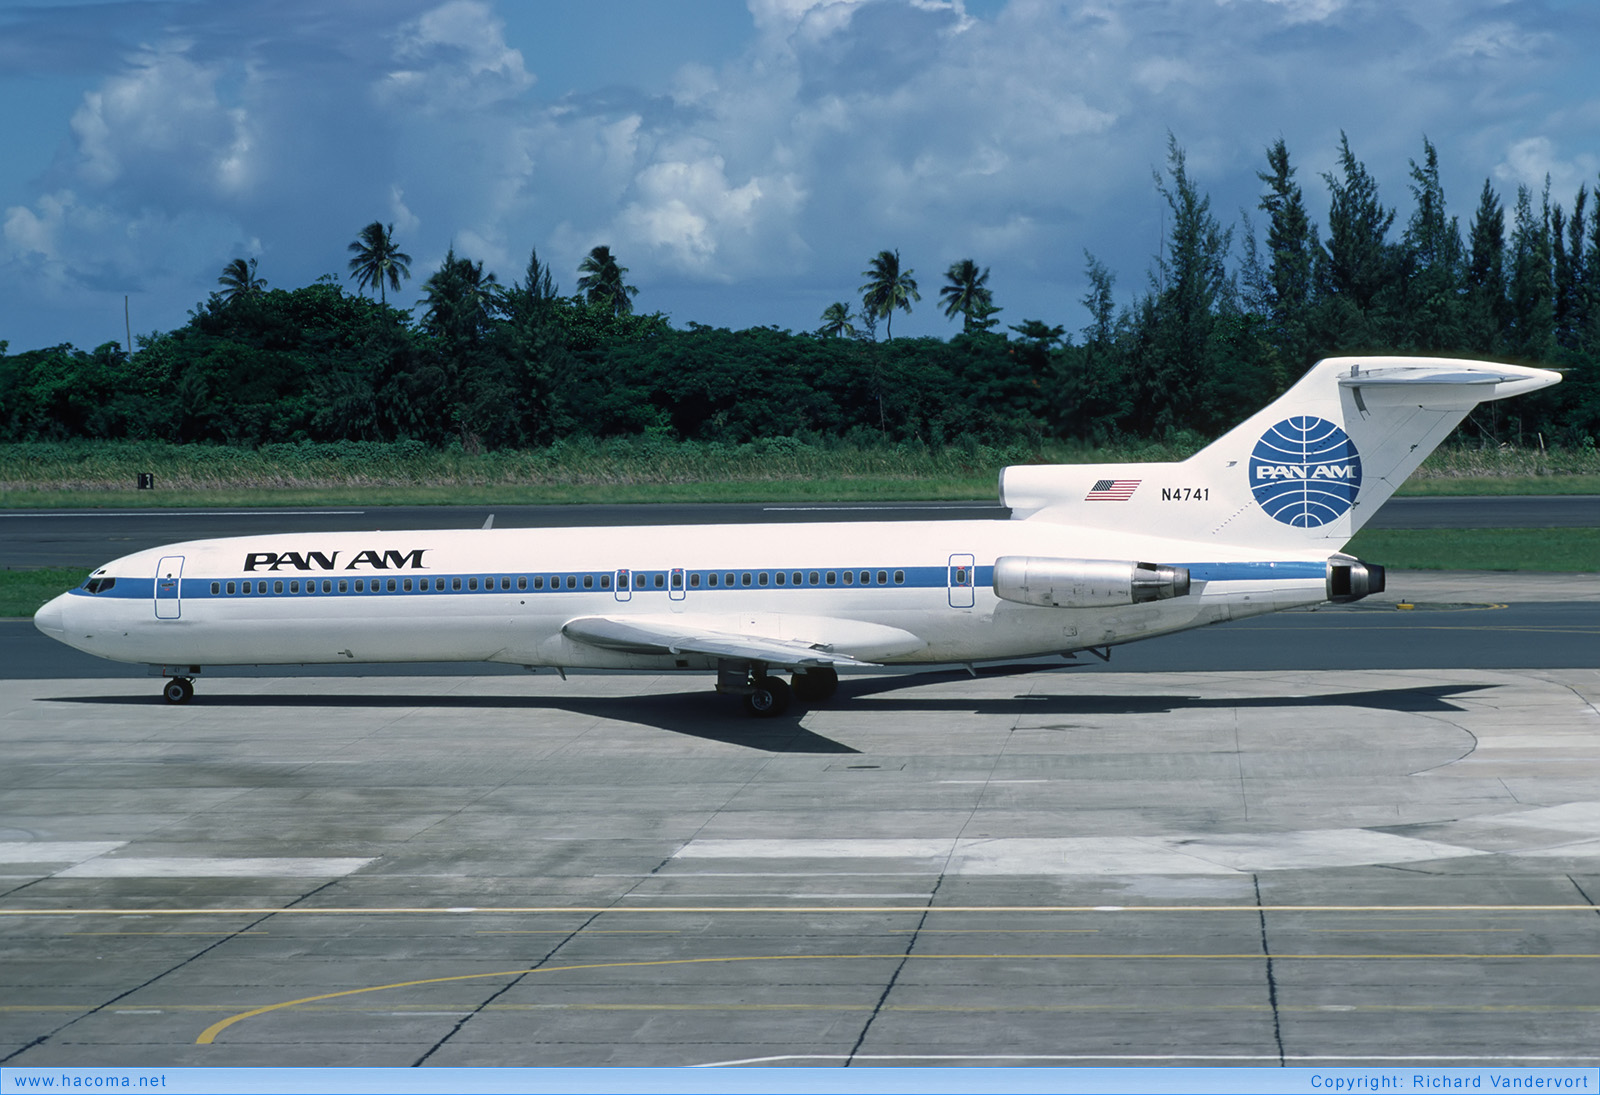 Photo of N4741 - Pan Am Clipper Defender - Isla Verde International Airport - Sep 1980